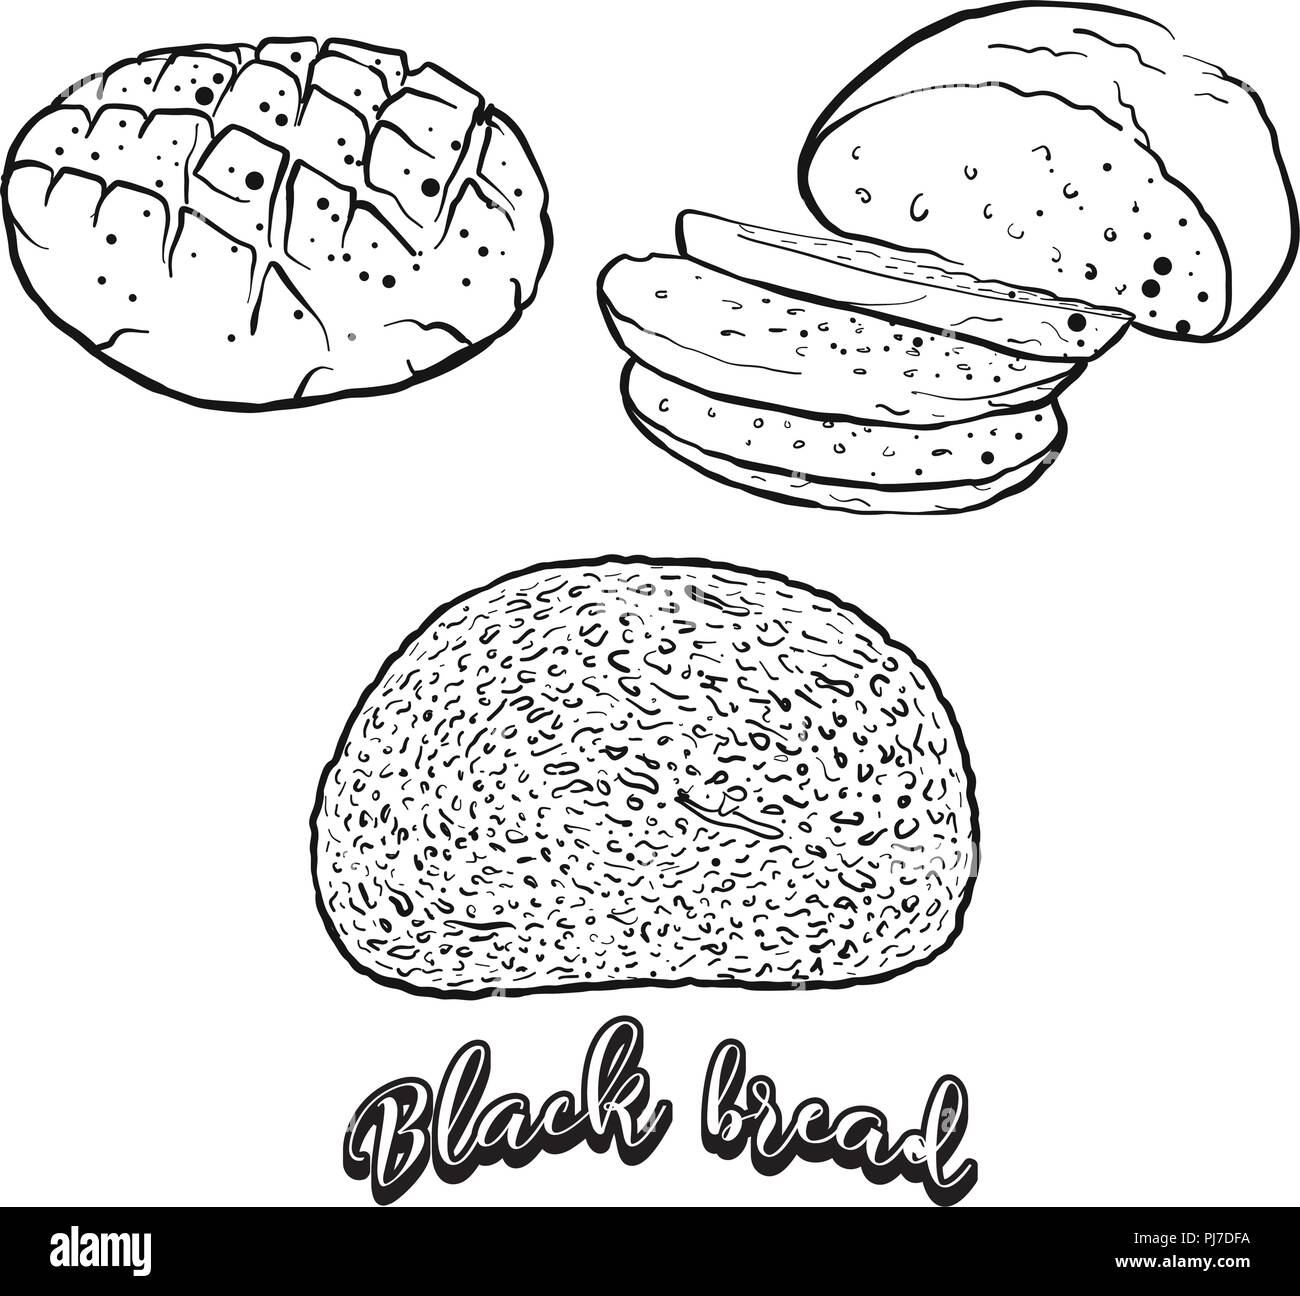 Hand gezeichnete Skizze von dem Schwarzen Brot Brot. Vektor Zeichnung von Roggenbrot essen, in der Regel in Europa bekannt. Brot Abbildung Serie. Stock Vektor